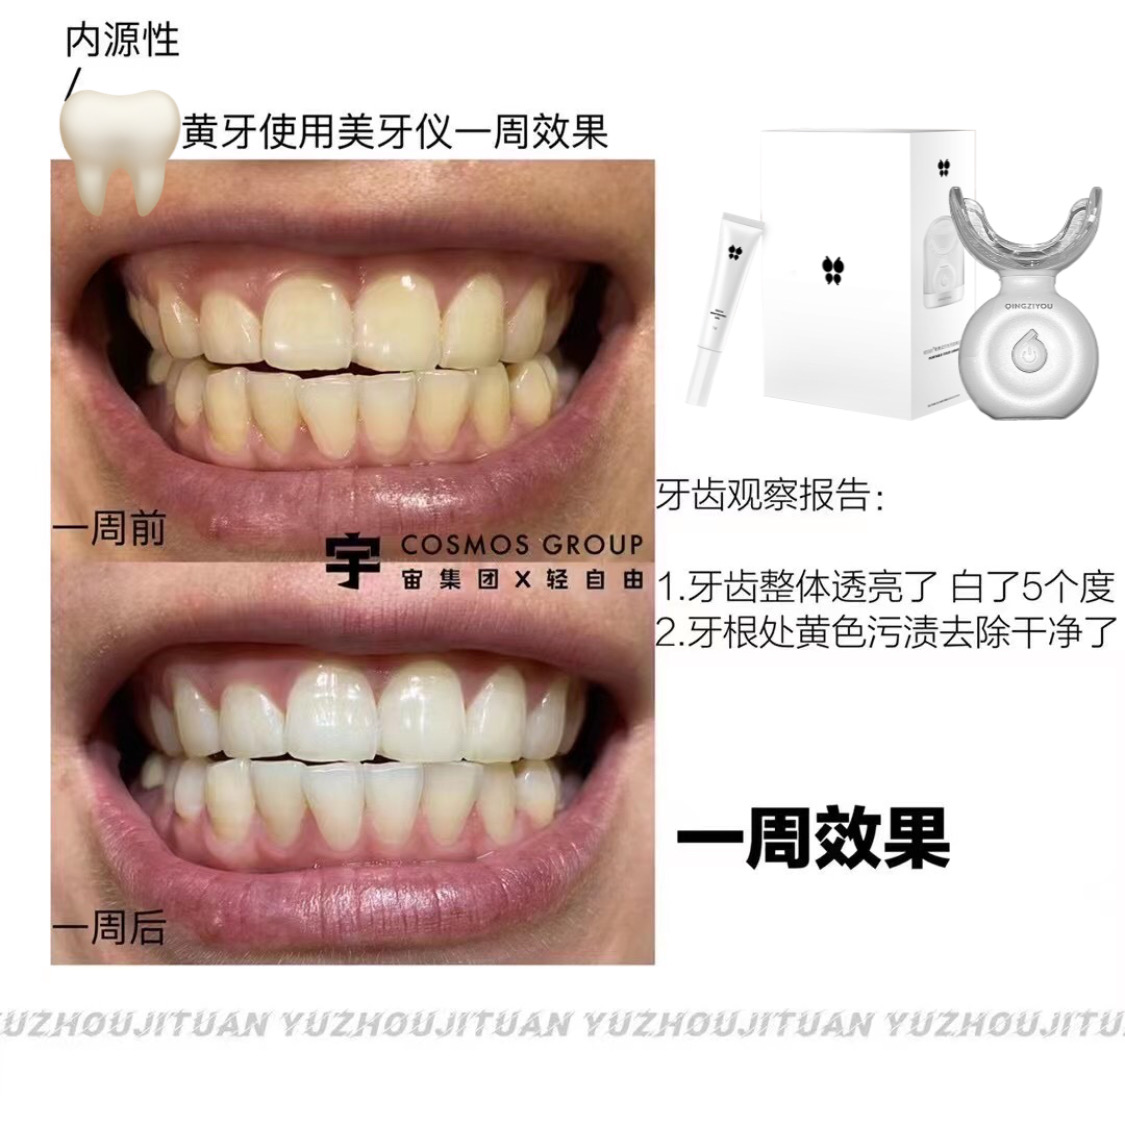 碧缇福二代美牙仪全新上市 让你的牙齿更白更透亮